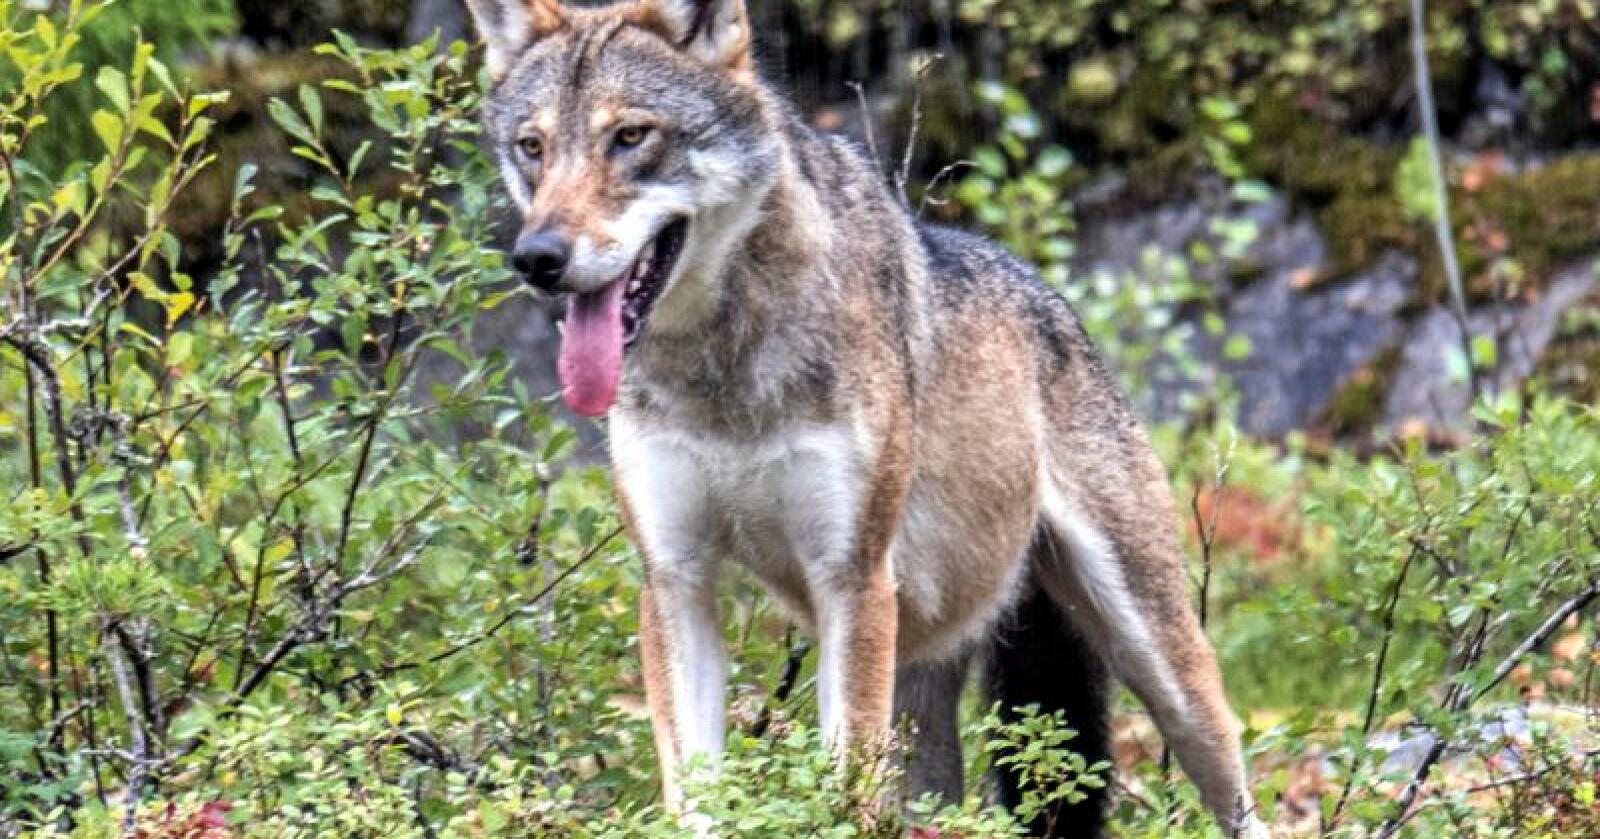 Nok et vedtak om felling av ulv vil bli klaget inn for Klima- og miljødepartementet. Foto: Paul Kleiven / NTB scanpix